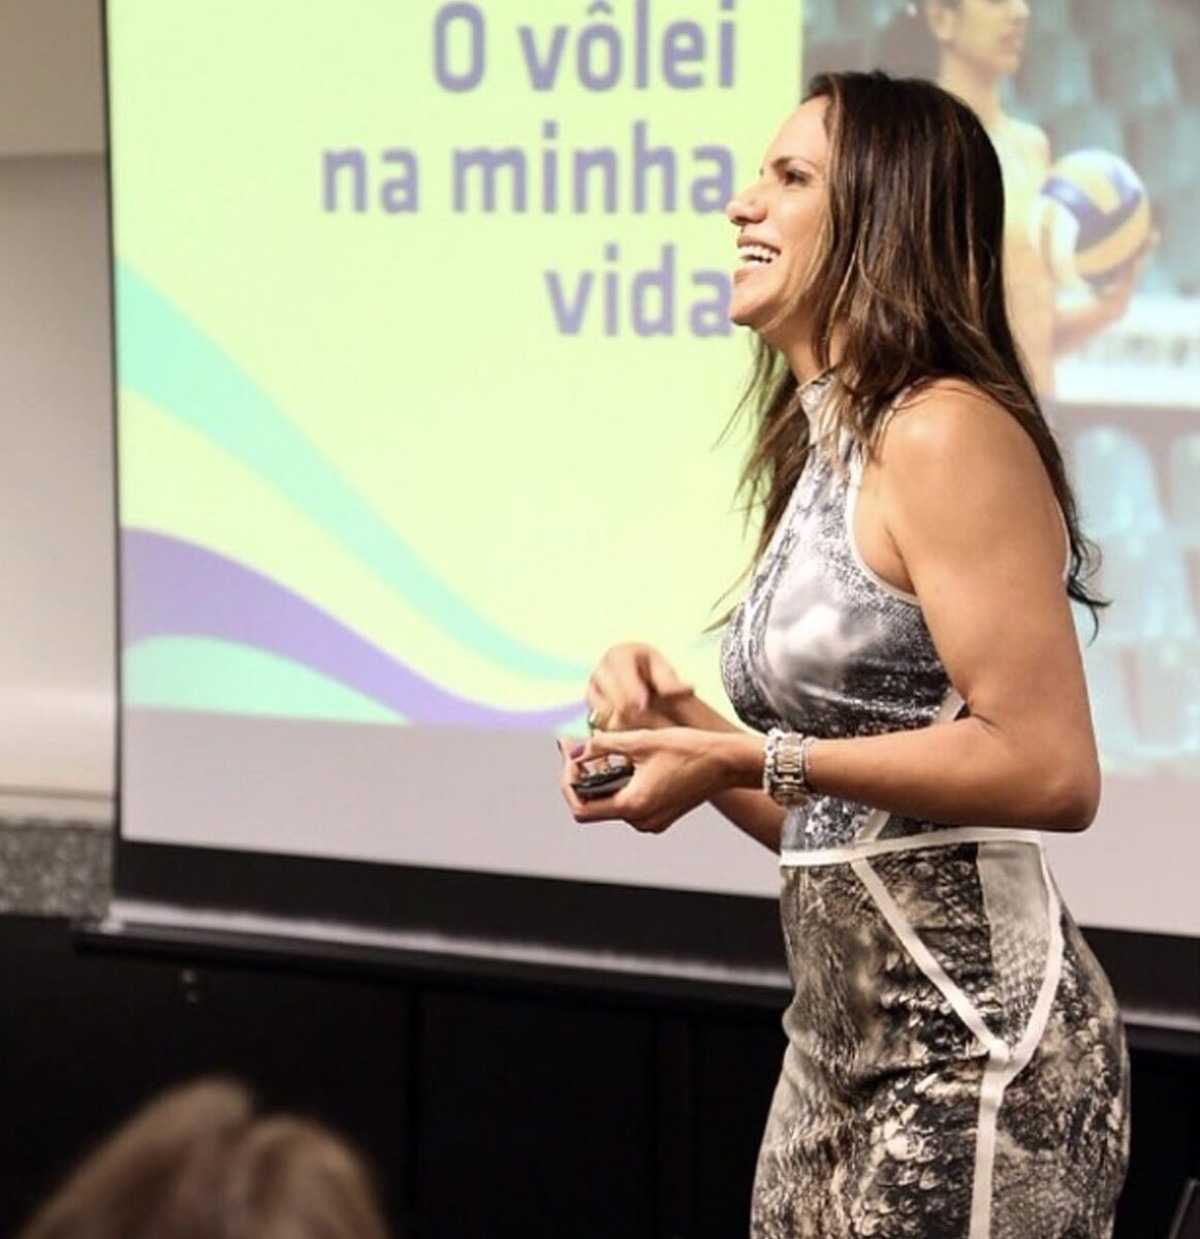 Virna relembra como colaborou para a ascensão do esporte feminino do Brasil